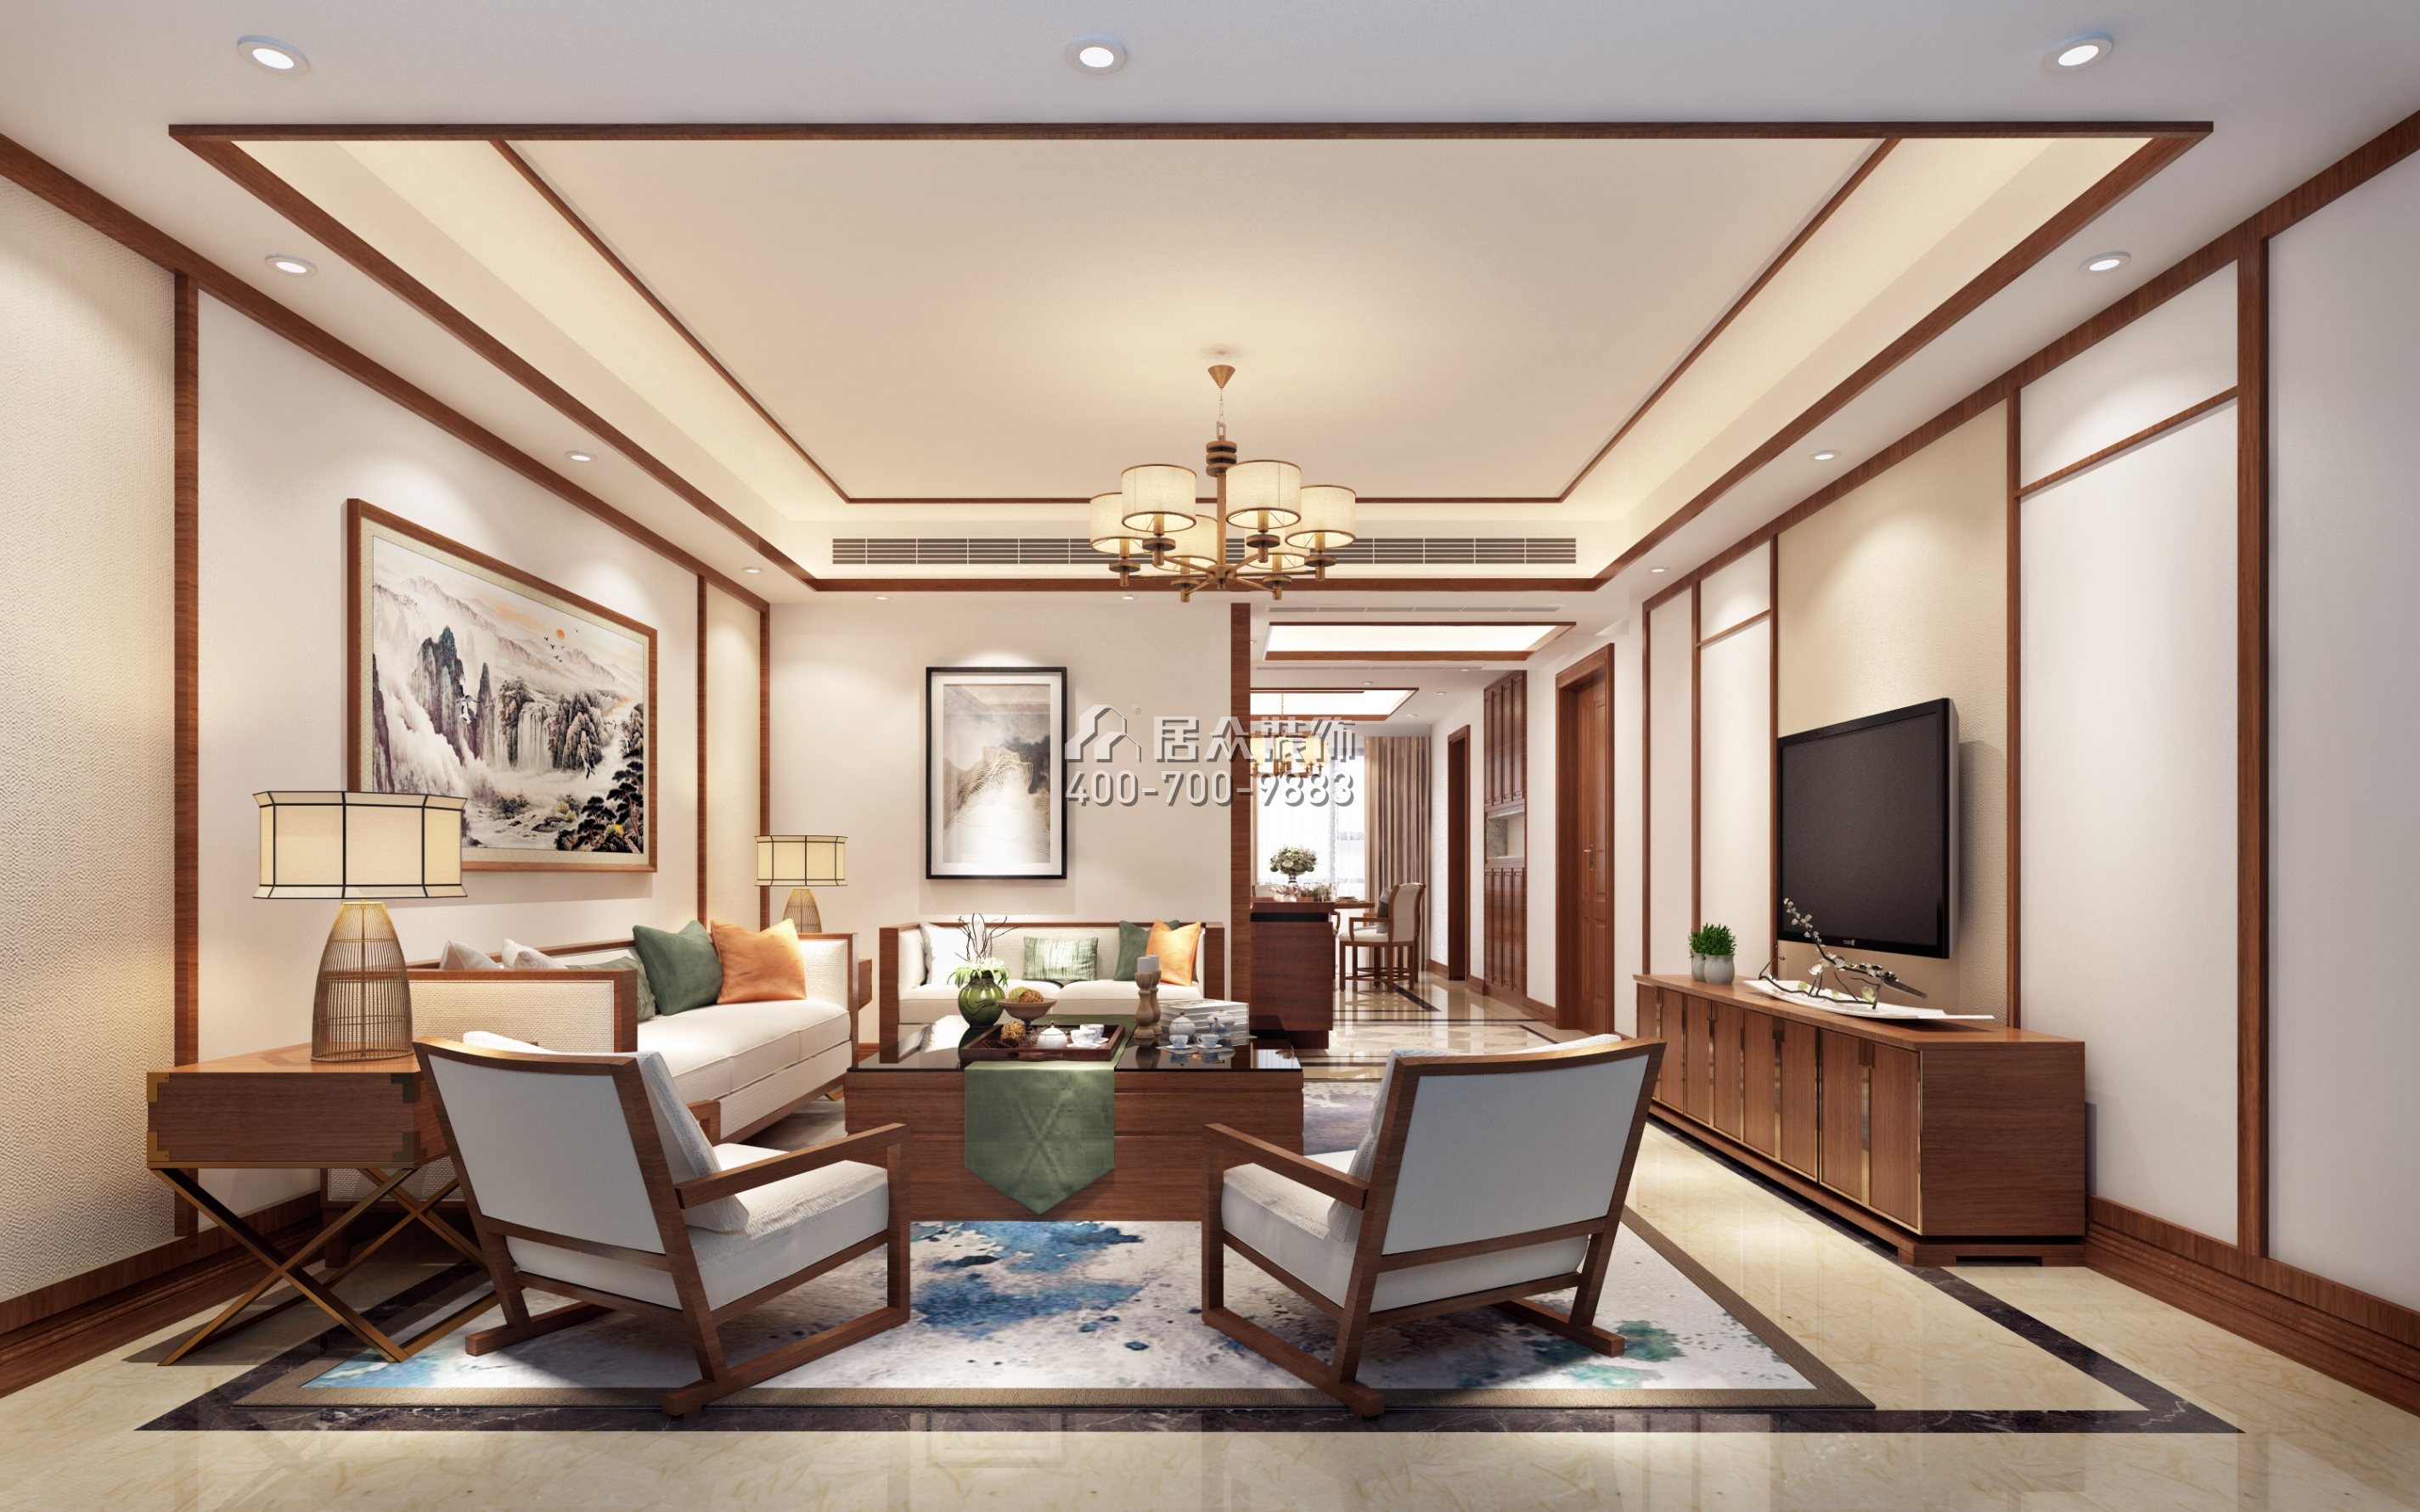 华发峰景湾168平方米中式风格平层户型客厅装修效果图